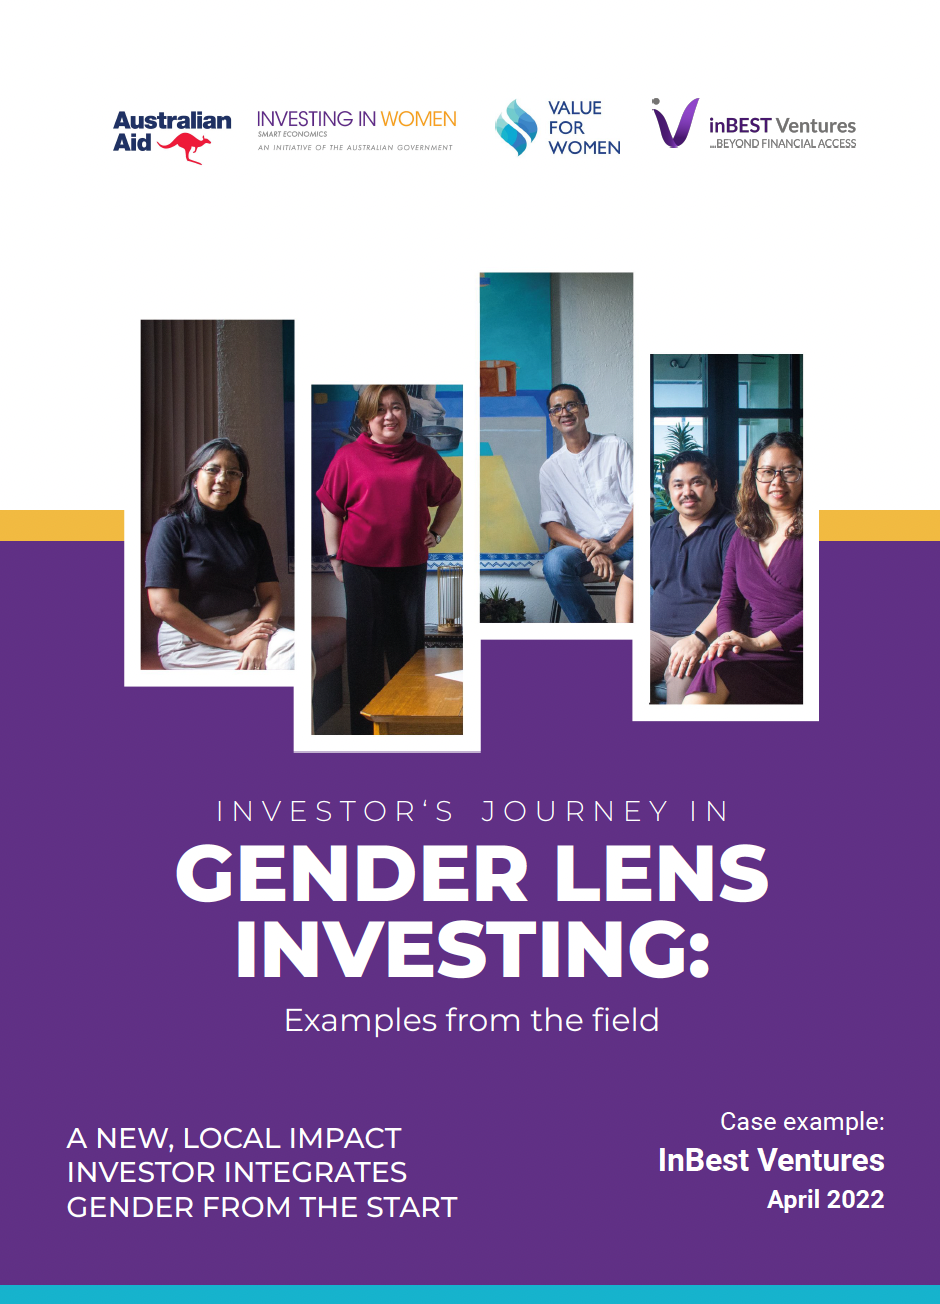 InBEST Gender Lens Investing